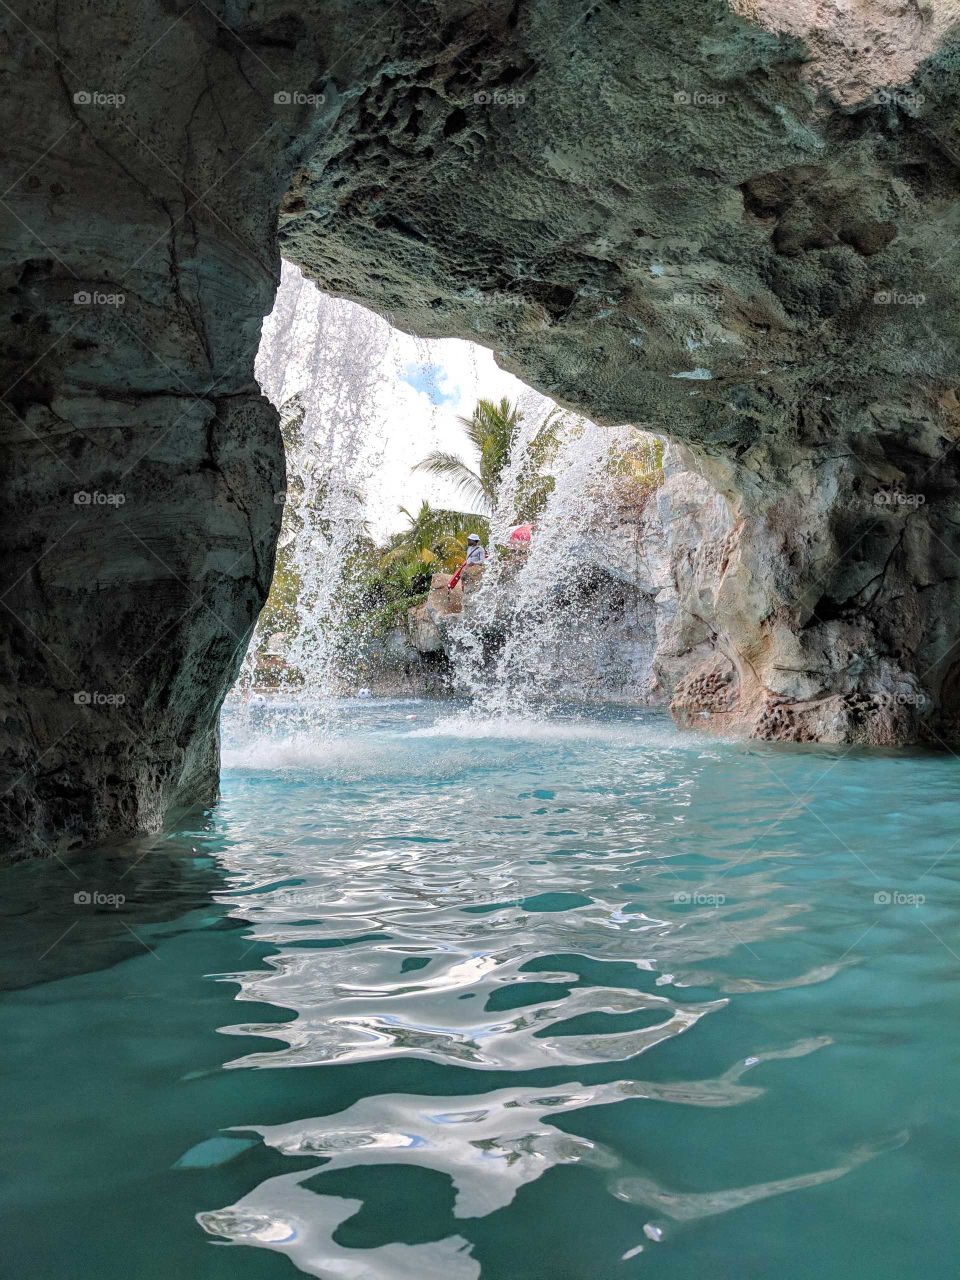 Inside a sea cave. The Bahamas. Sea life, sunny days. The Carribbeans.